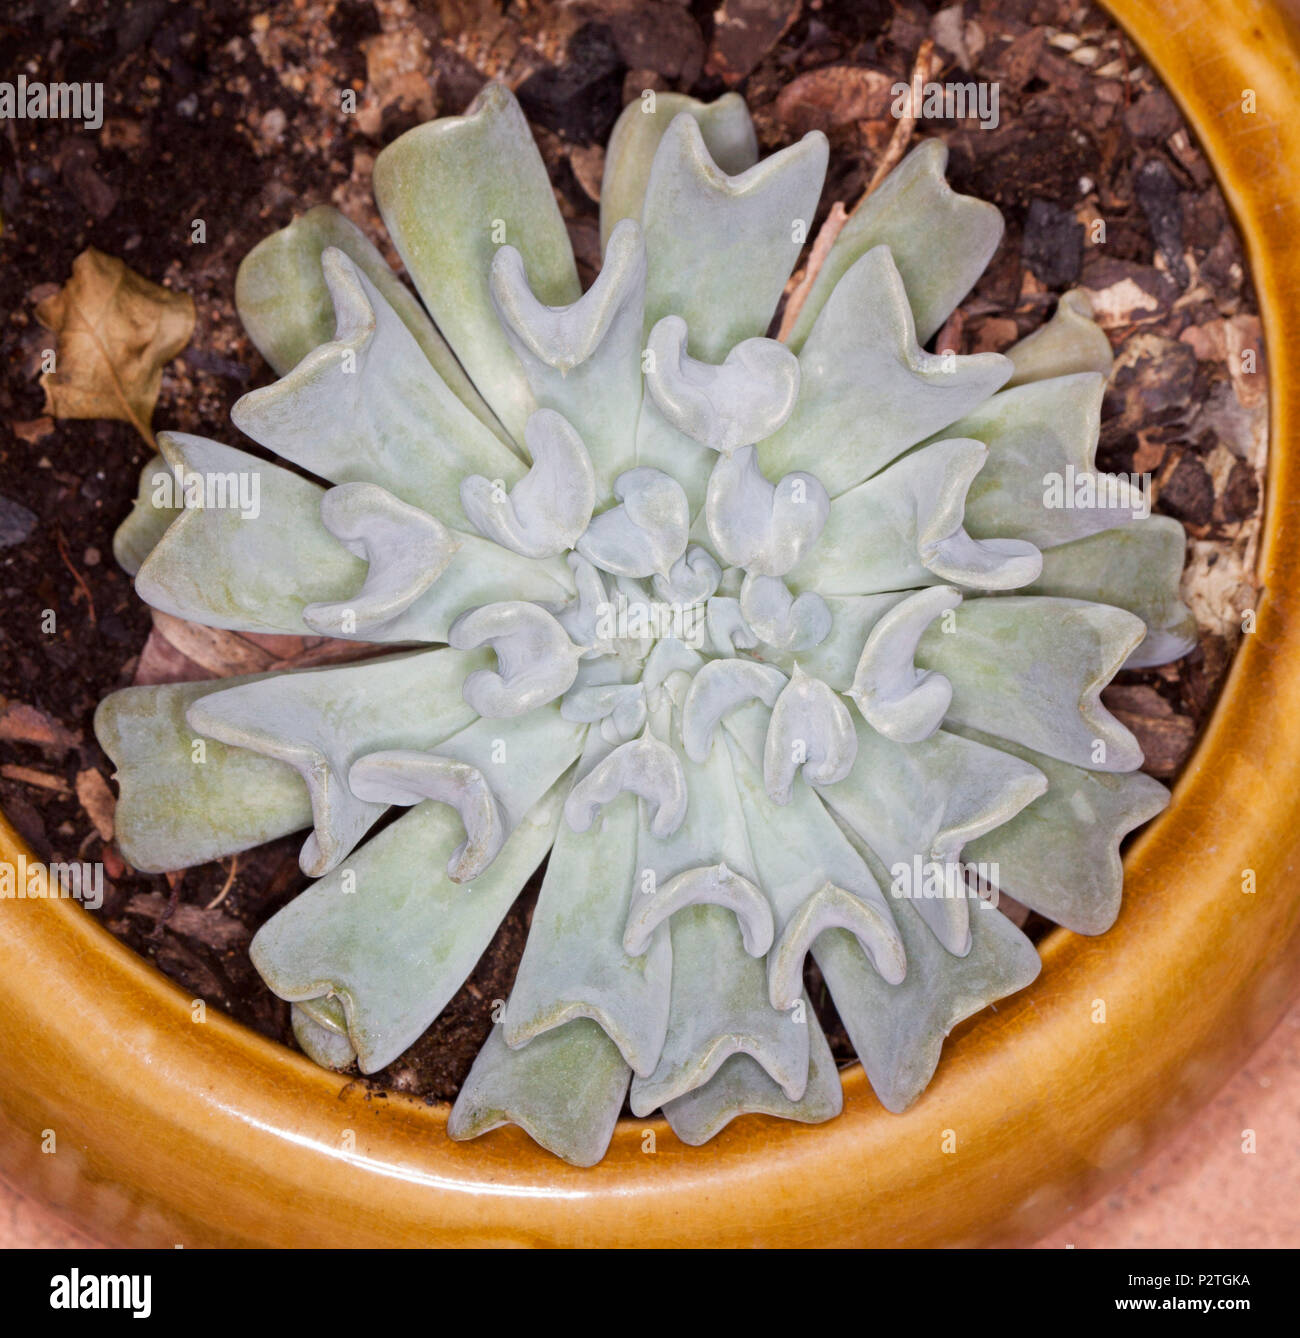 Tolérant la sécheresse décoratif plante succulente Echeveria runyonii 'Topsy Turvy' avec des feuilles gris bleu en rosette symétrique dans le récipient en croissance Banque D'Images